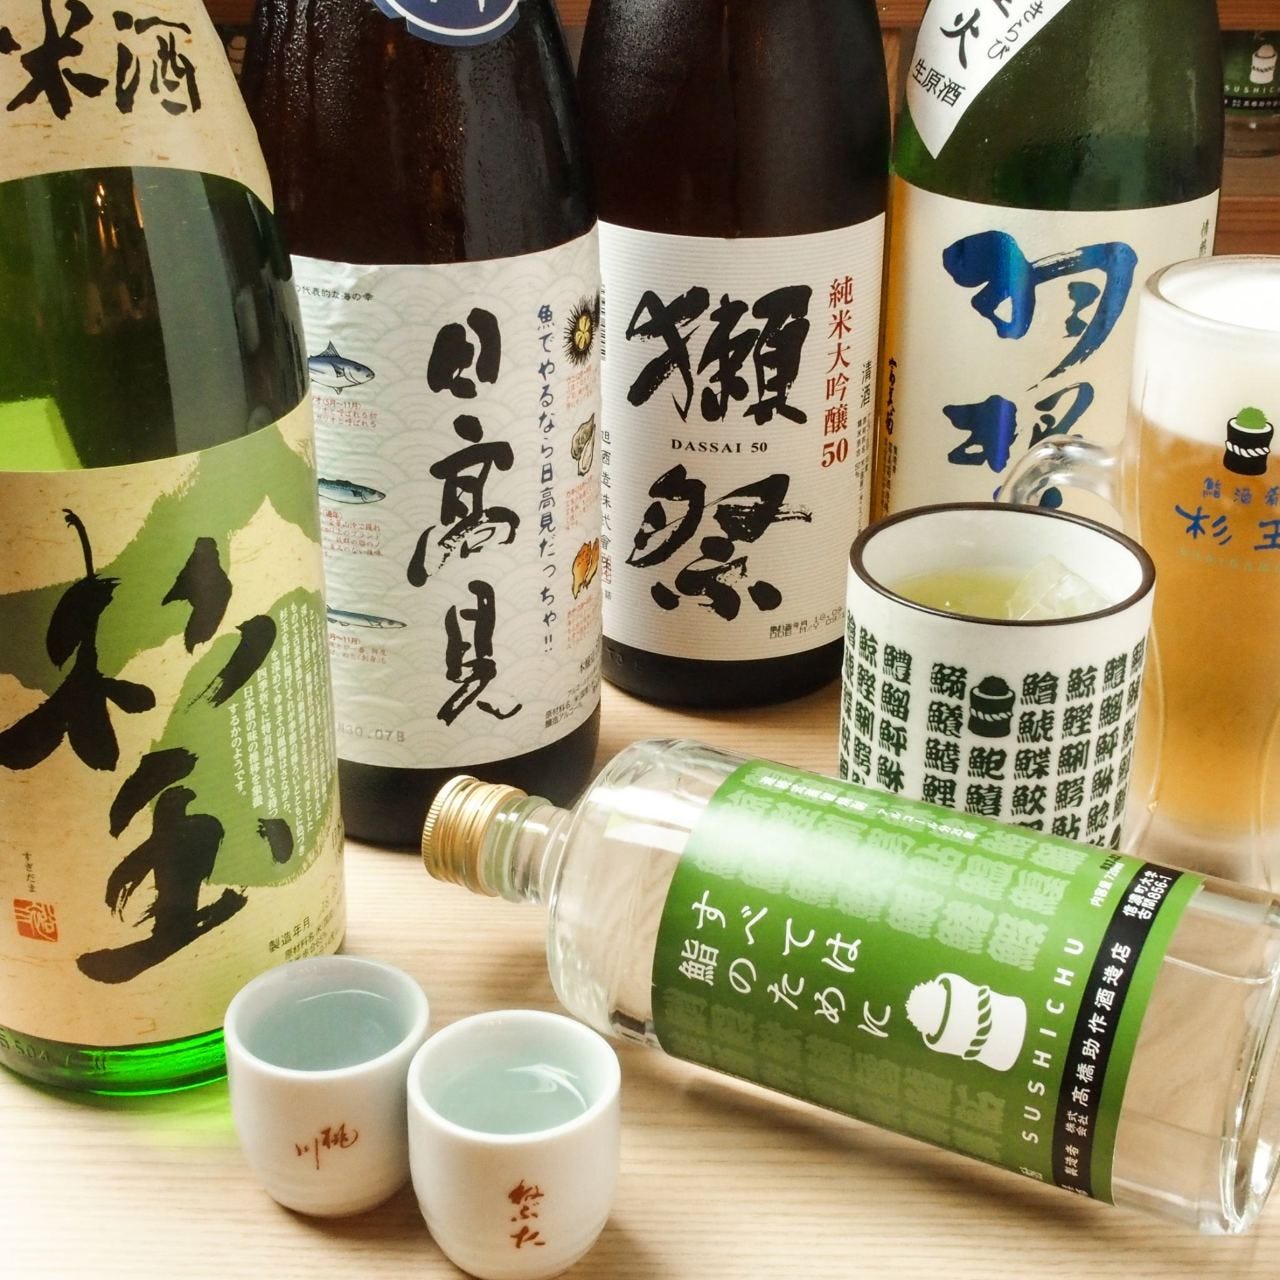 鮨・酒・肴 杉玉 近鉄八尾